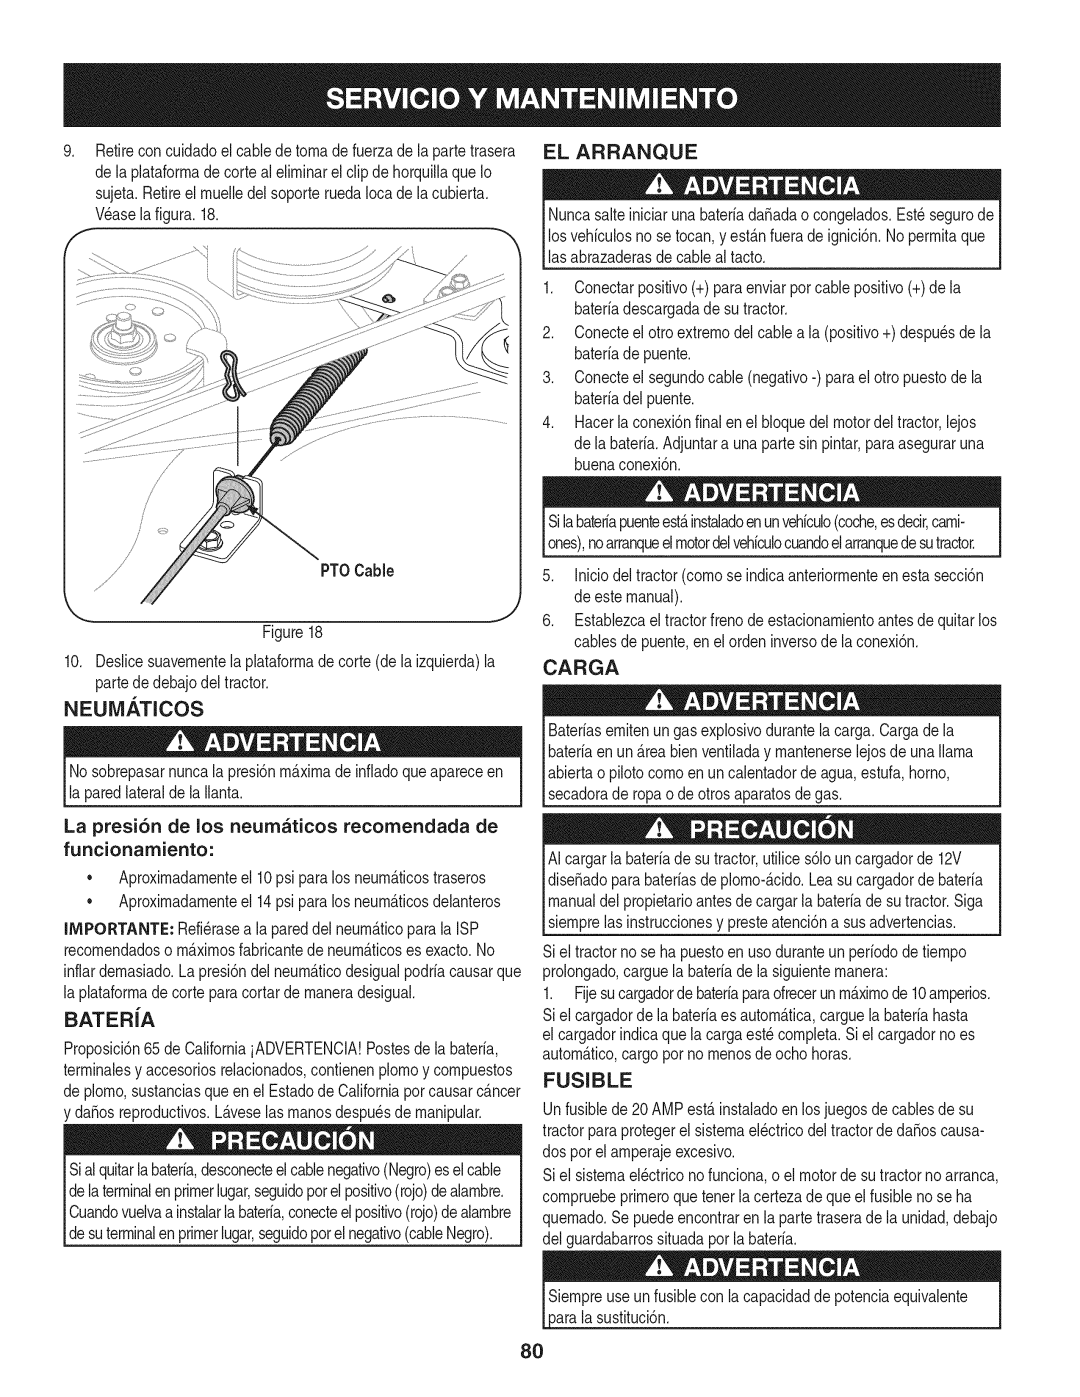 Craftsman 247.28901 manual El Arranque, Carga, Neum. Ticos, Batera, Fusible 